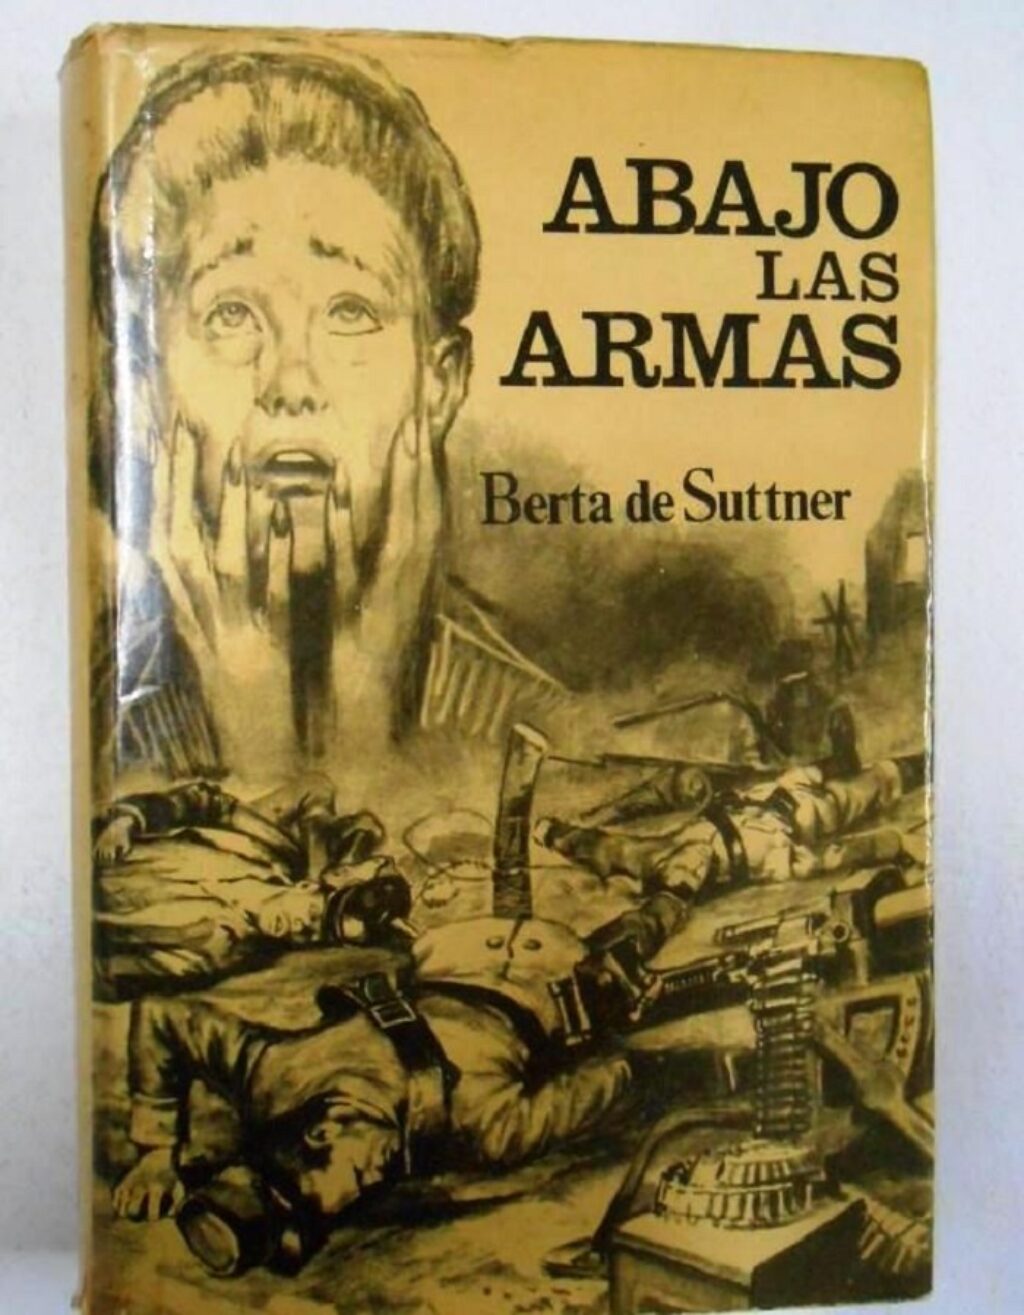 Una de las portadas de las múltiples ediciones de Abajo las armas, de Bertha von Sutter.